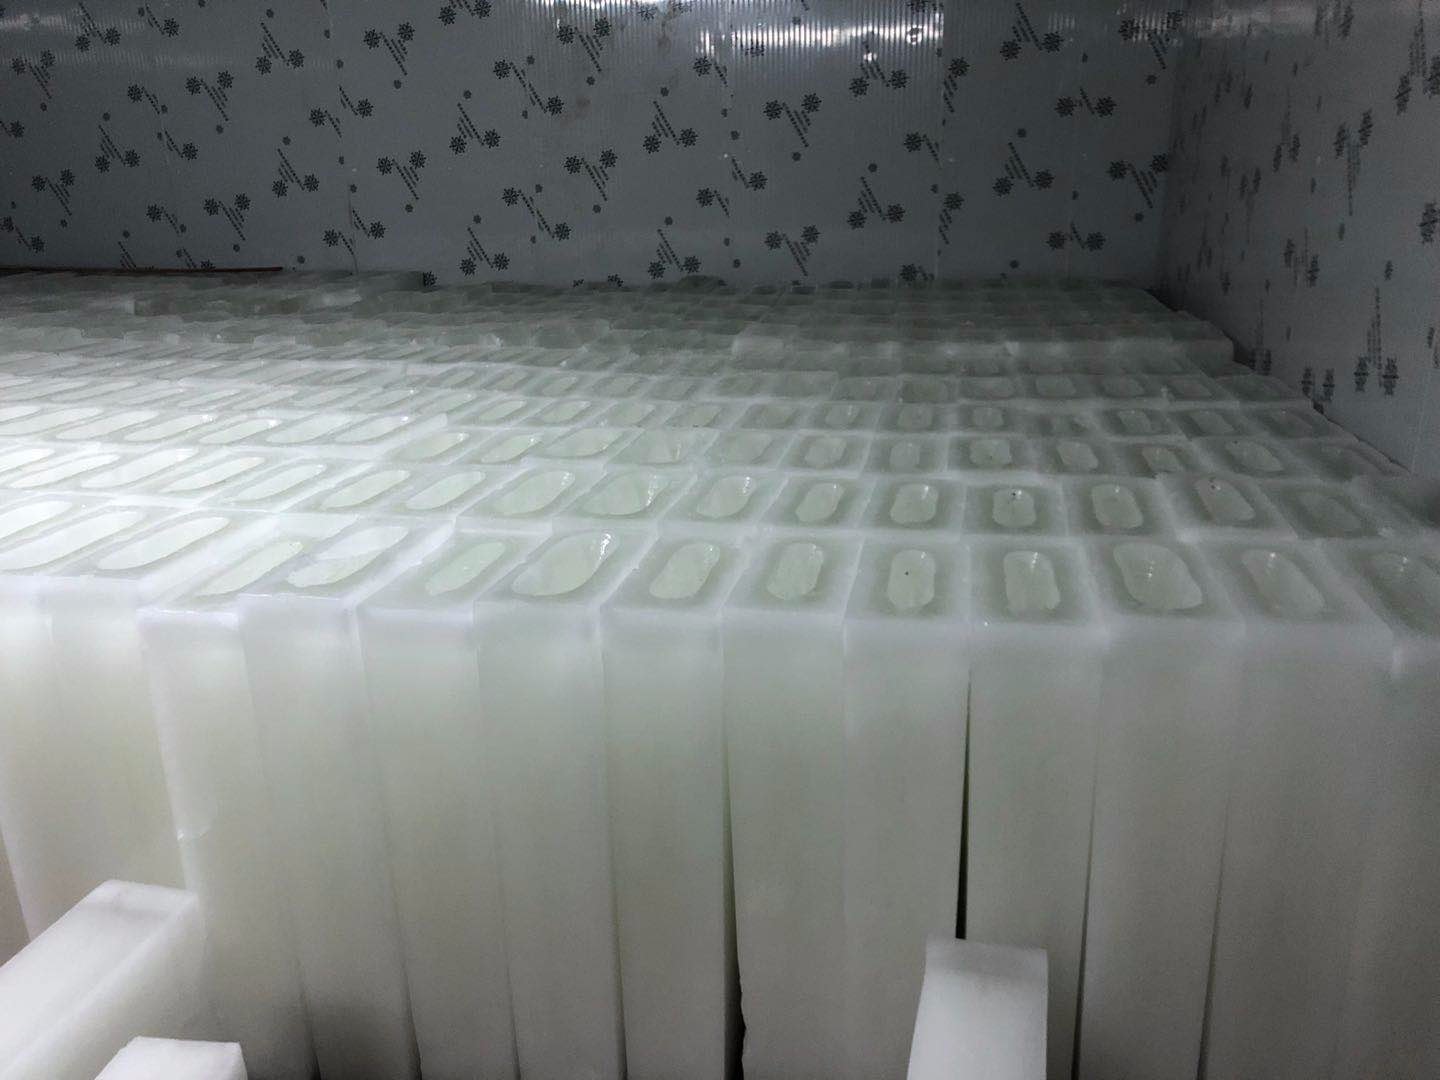 良臣制冰厂介绍降温冰块的生产流程